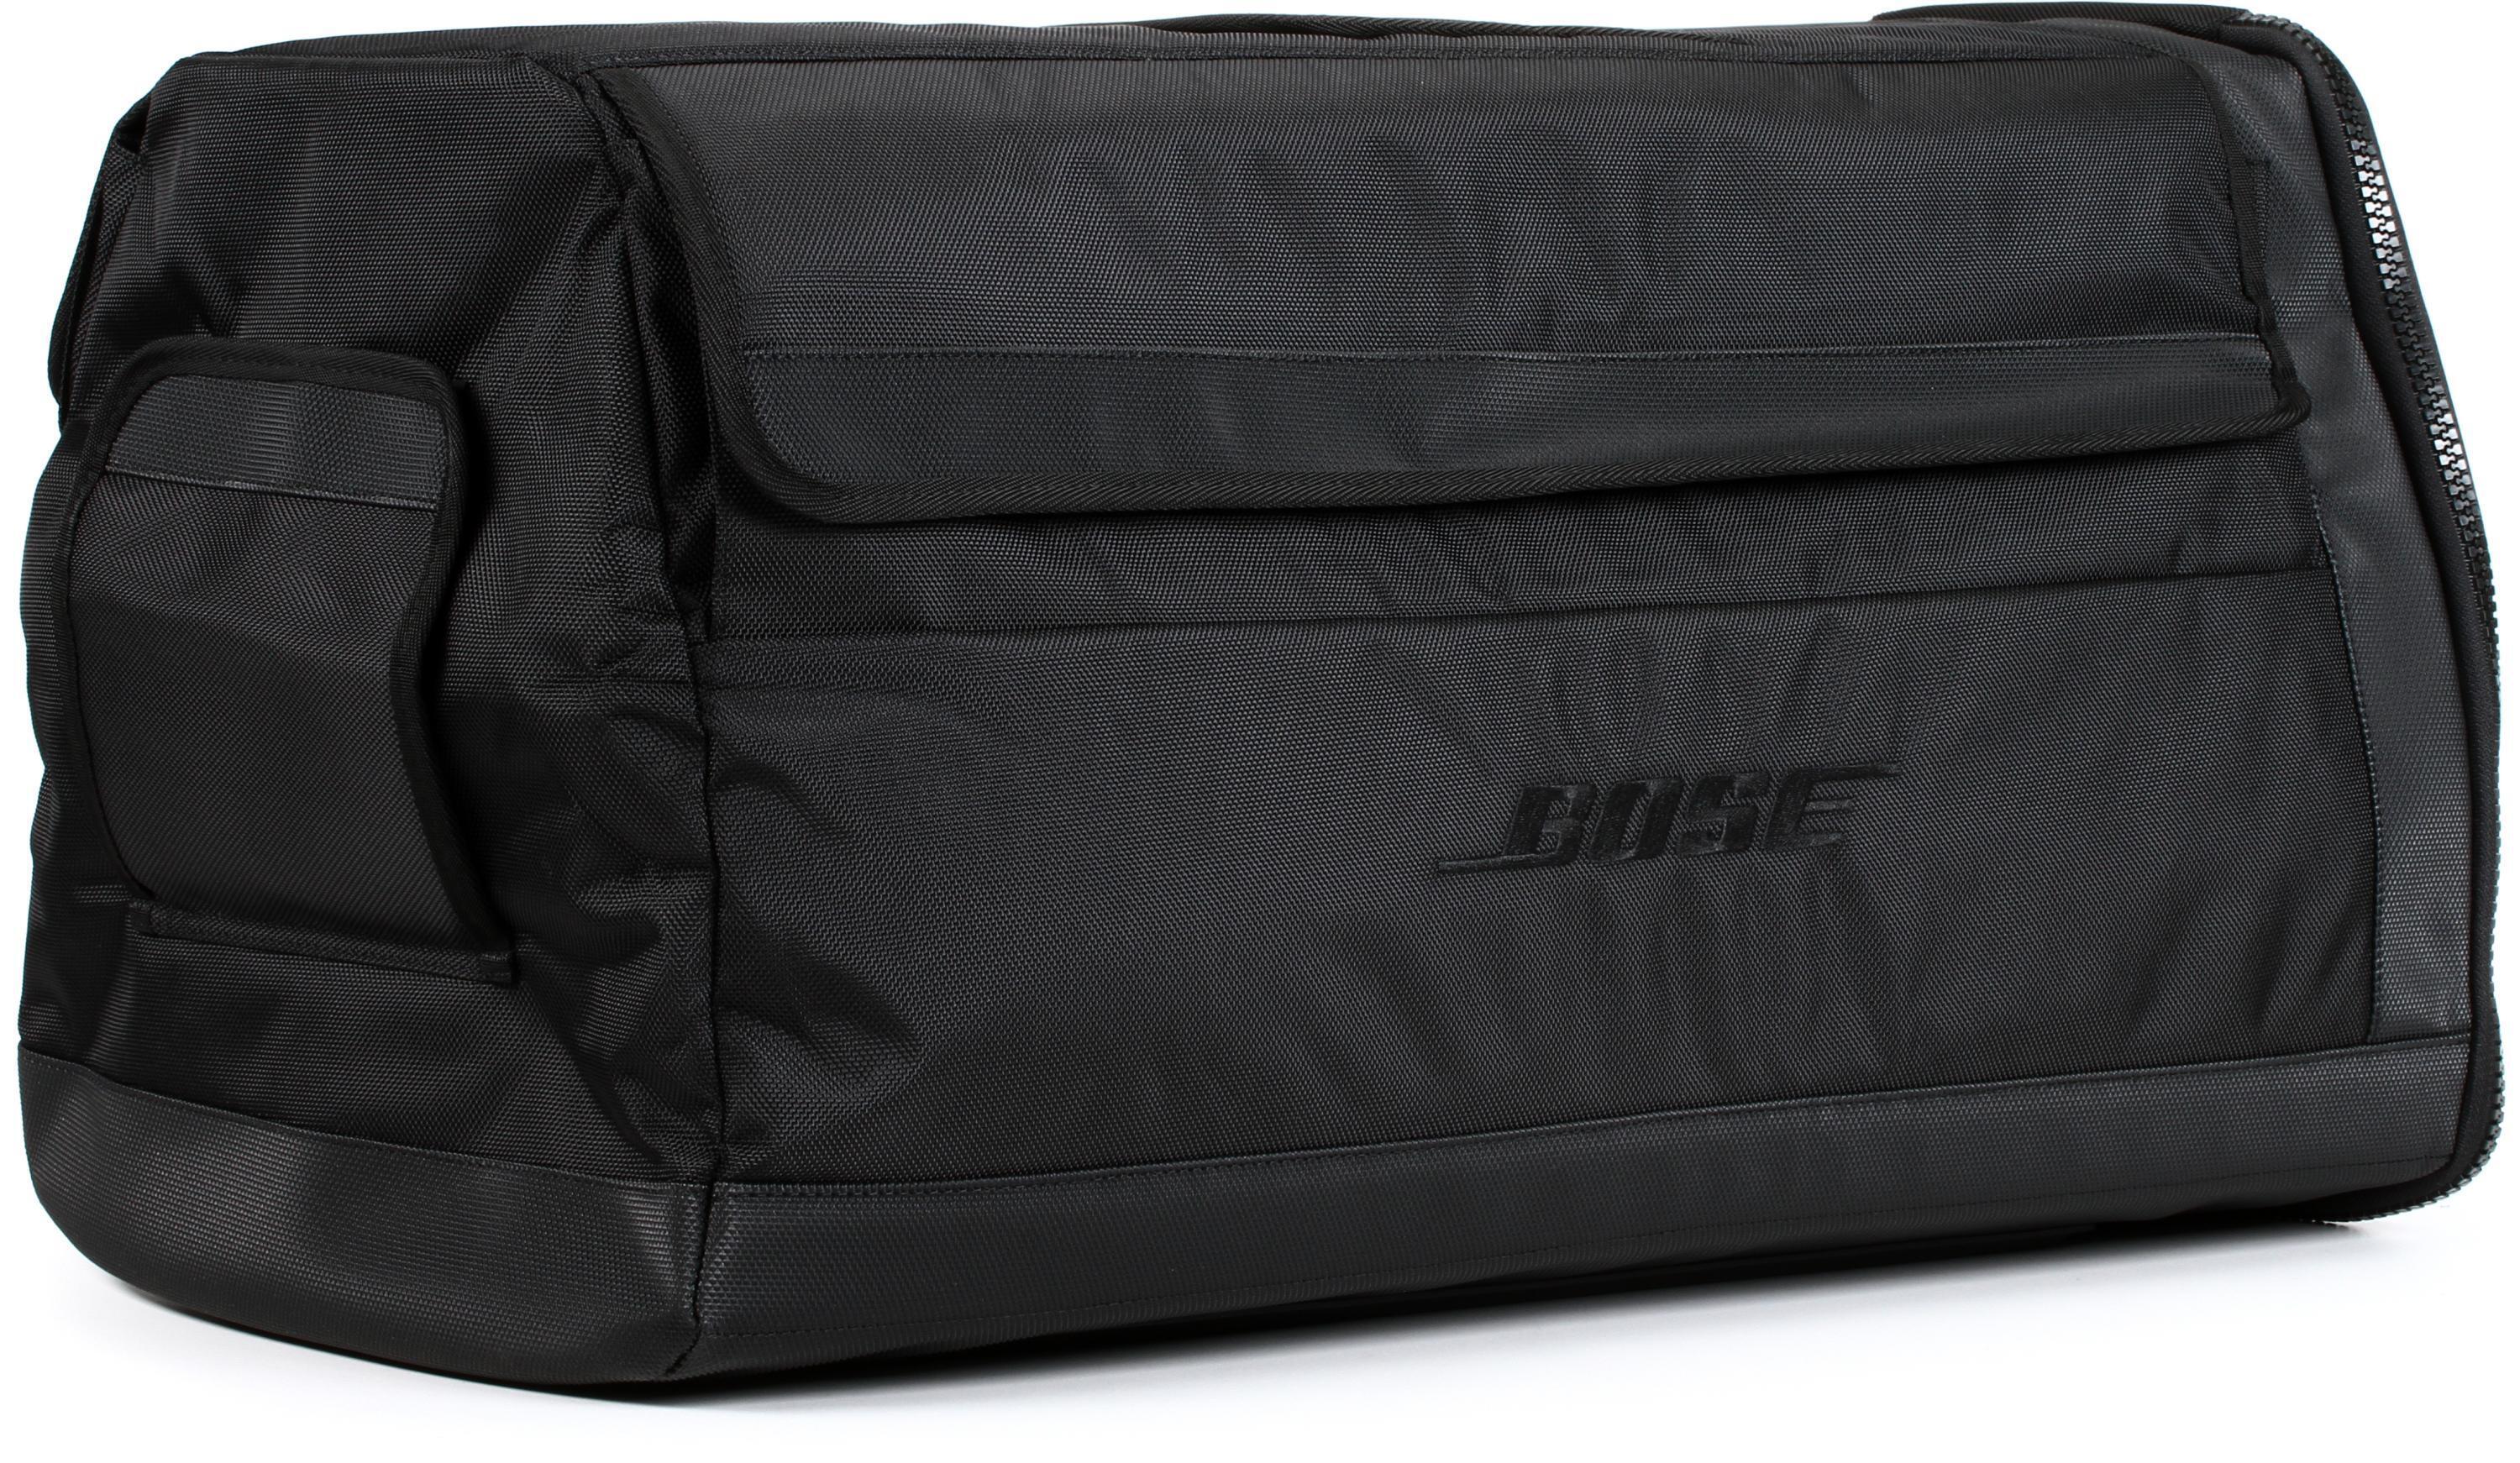 Bundled Item: Bose F1 Model 812 Travel Bag